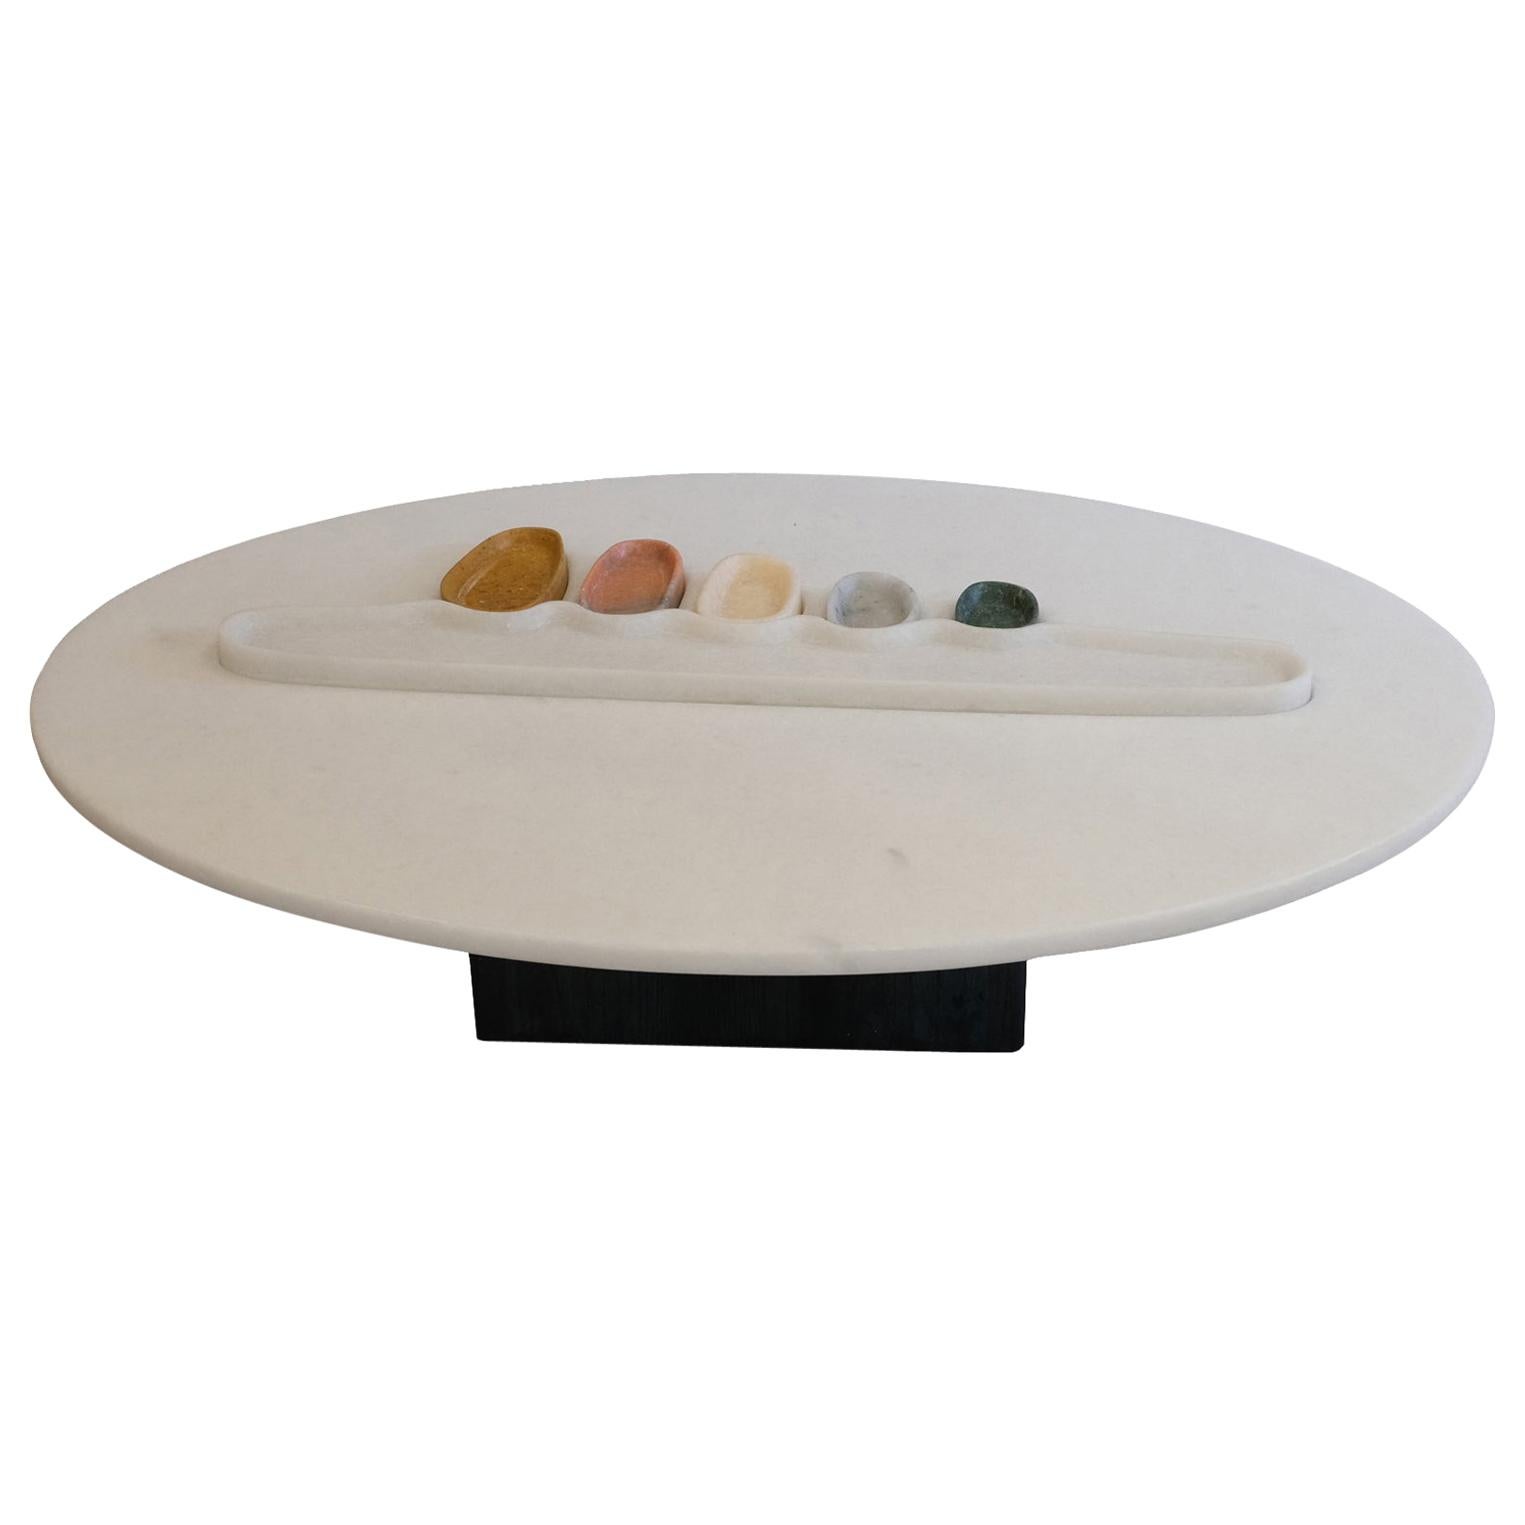 Thali, a Marble Low Table, Design by Matang and Natasha Sumant